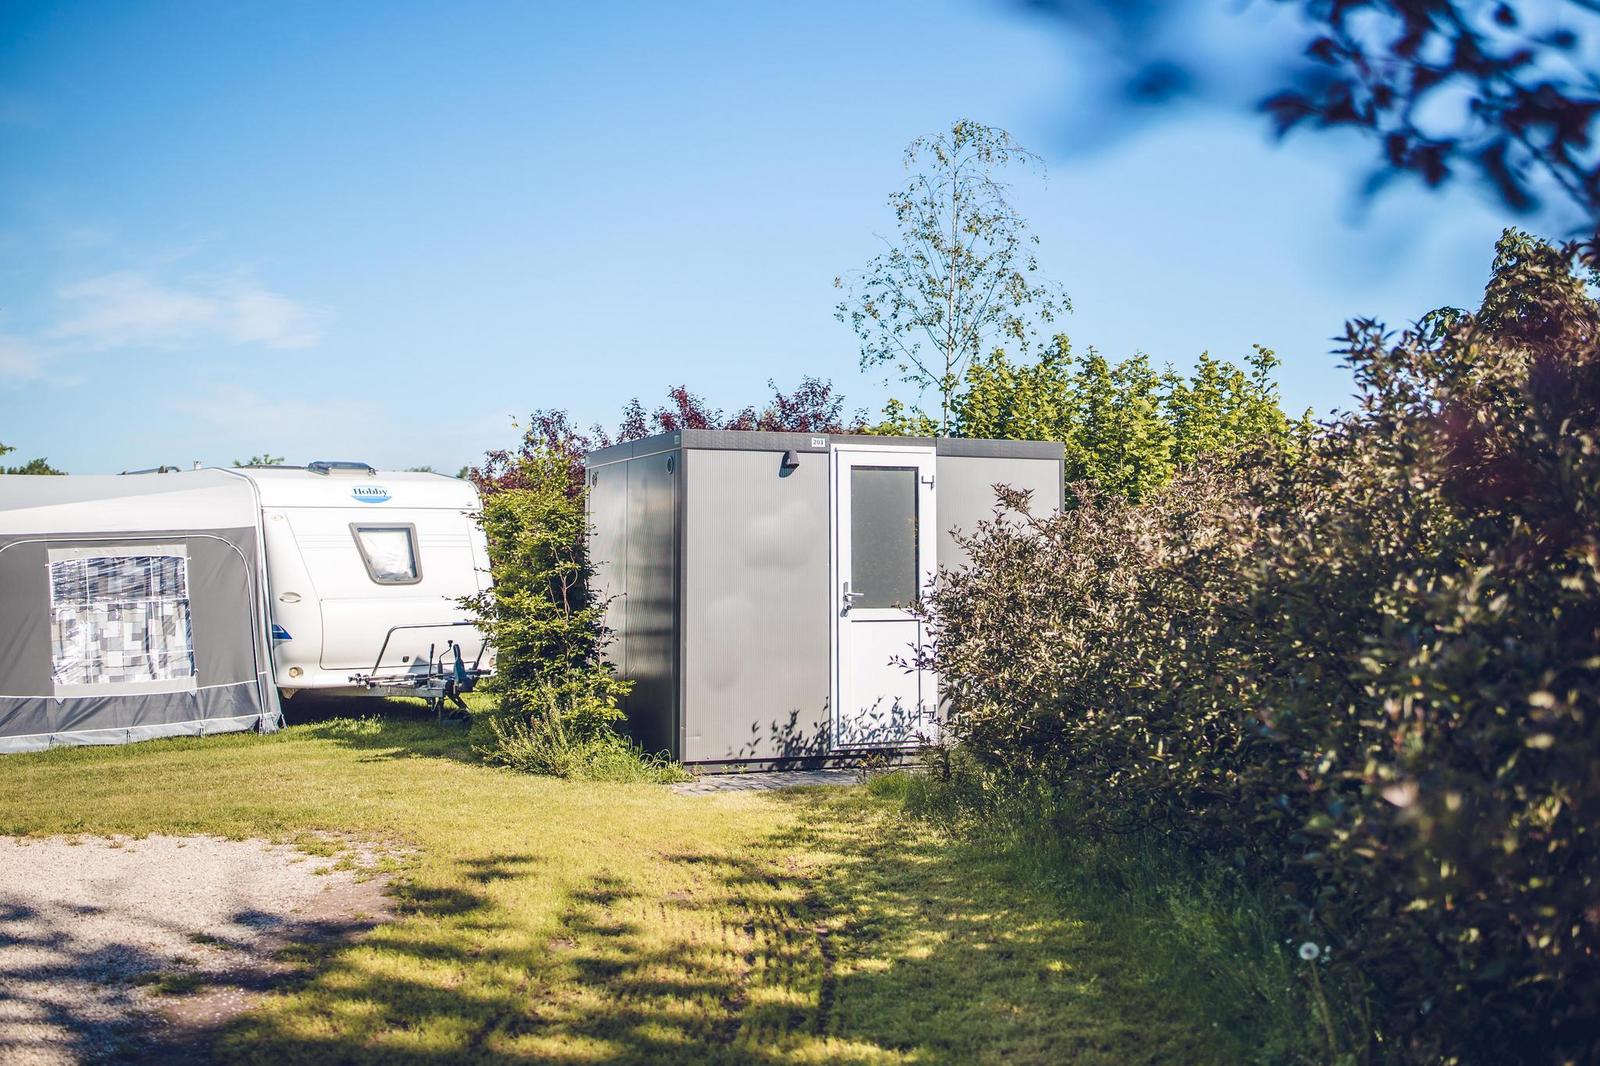 Camping Vakantiepark Ackersate - Kampeerplaats privé sanitair luxe